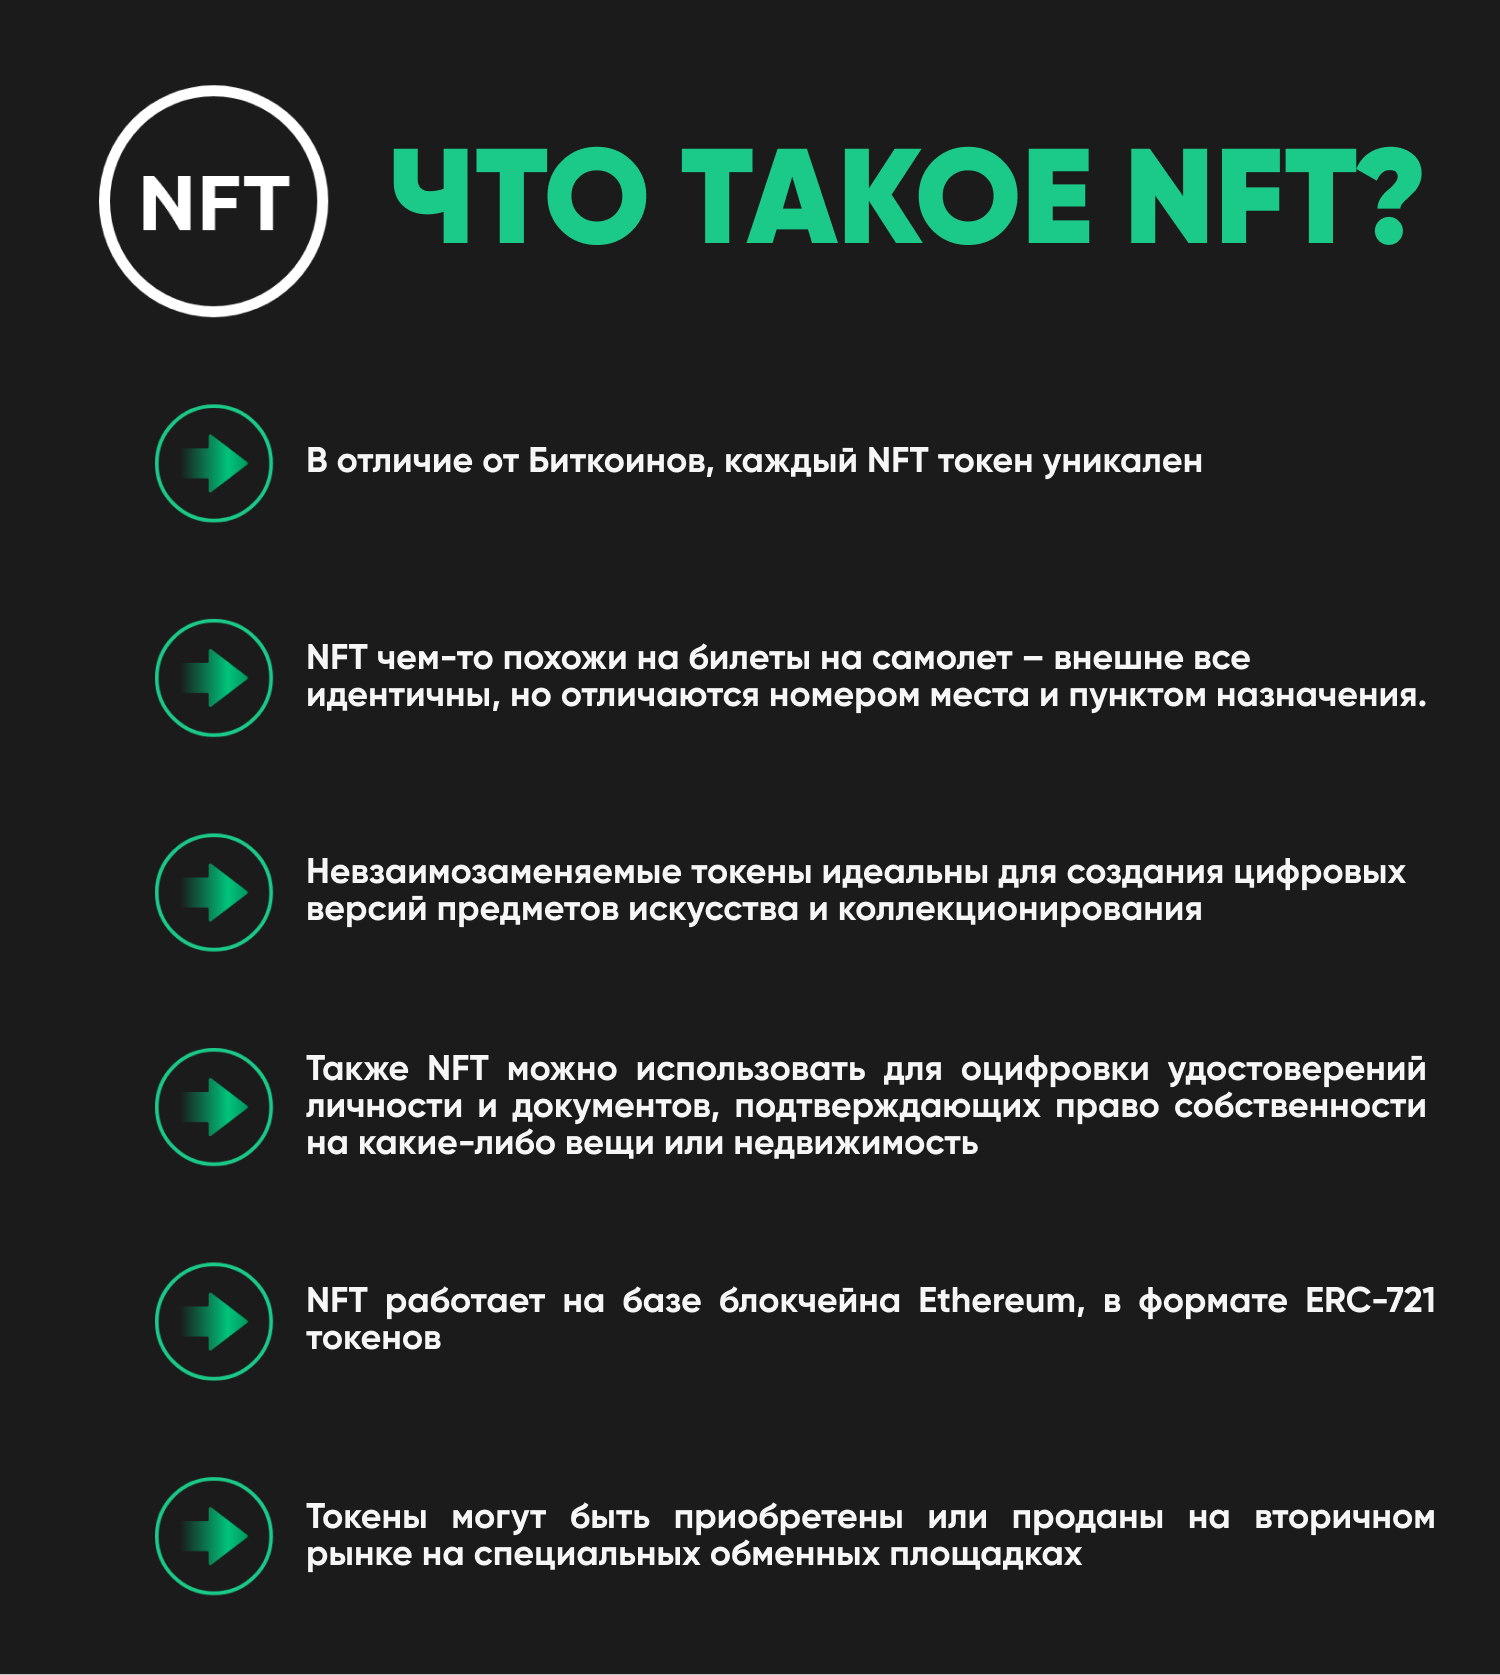 NFT токены. Невзаимозаменяемых токенов (NFT). Уникальные NFT токены. NFT token что это простыми словами.